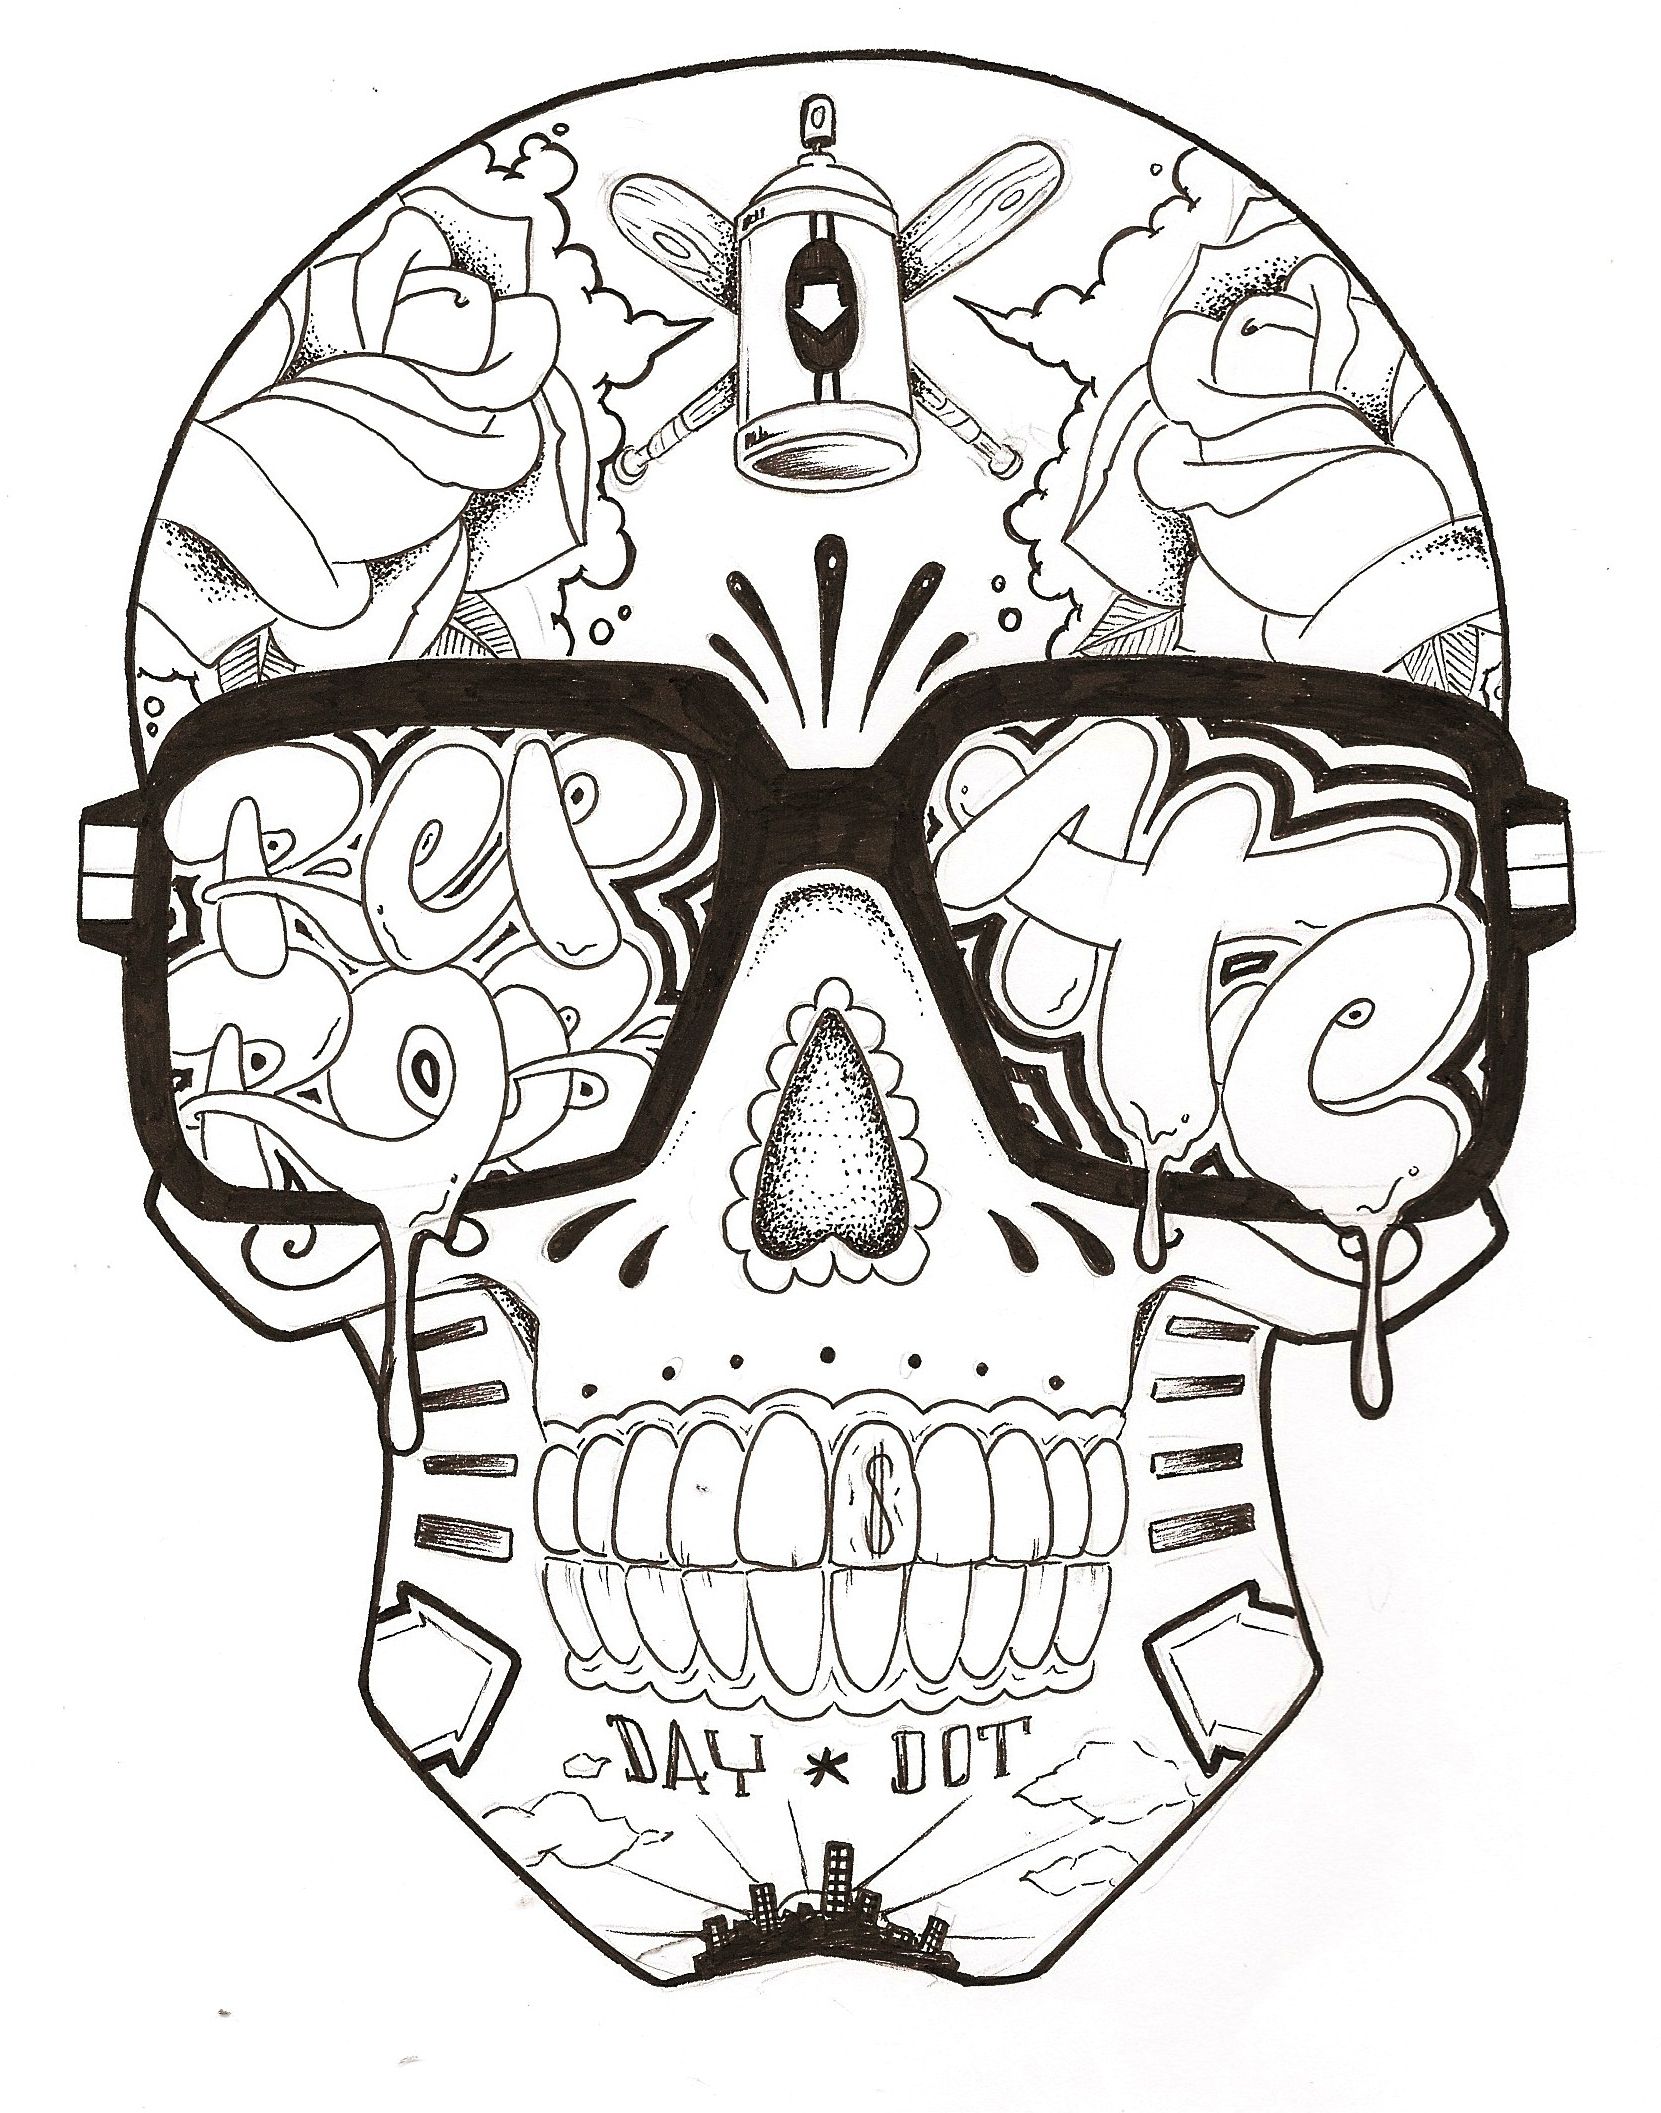 Gambar Graffiti Character Skull - KibrisPDR